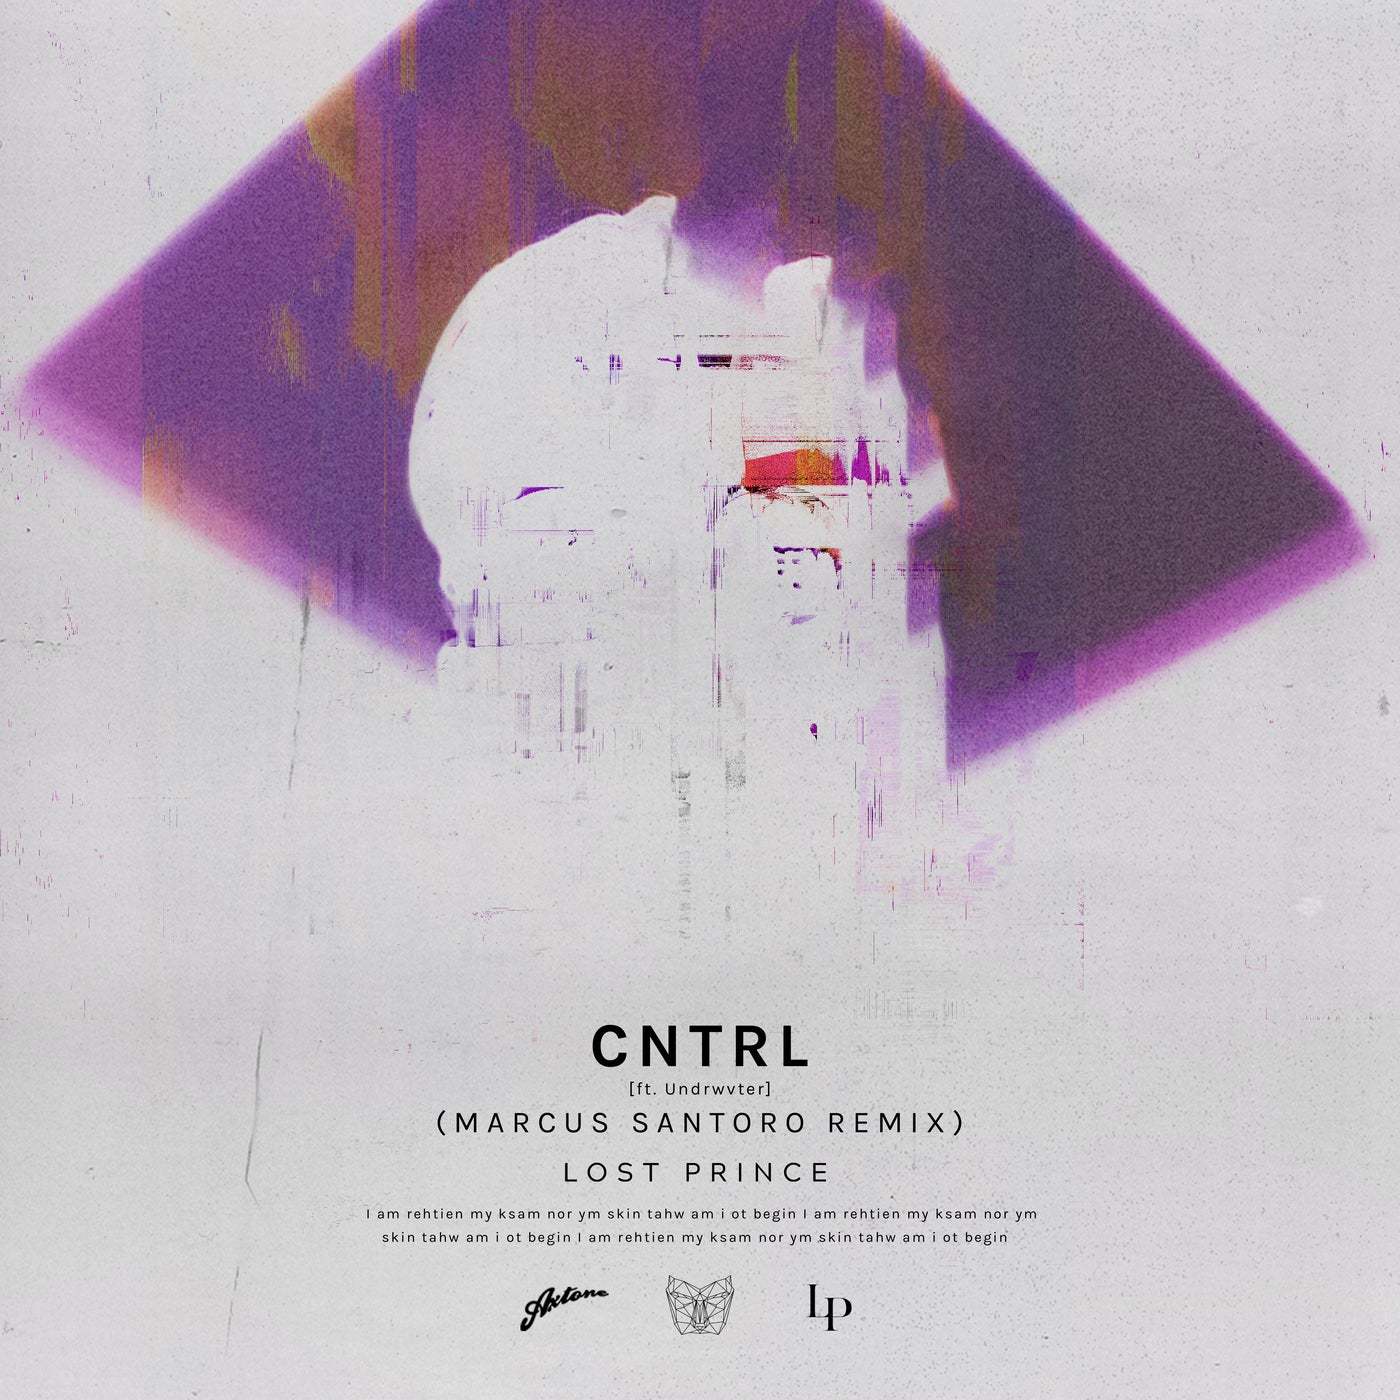 Cntrl - Marcus Santoro Remix